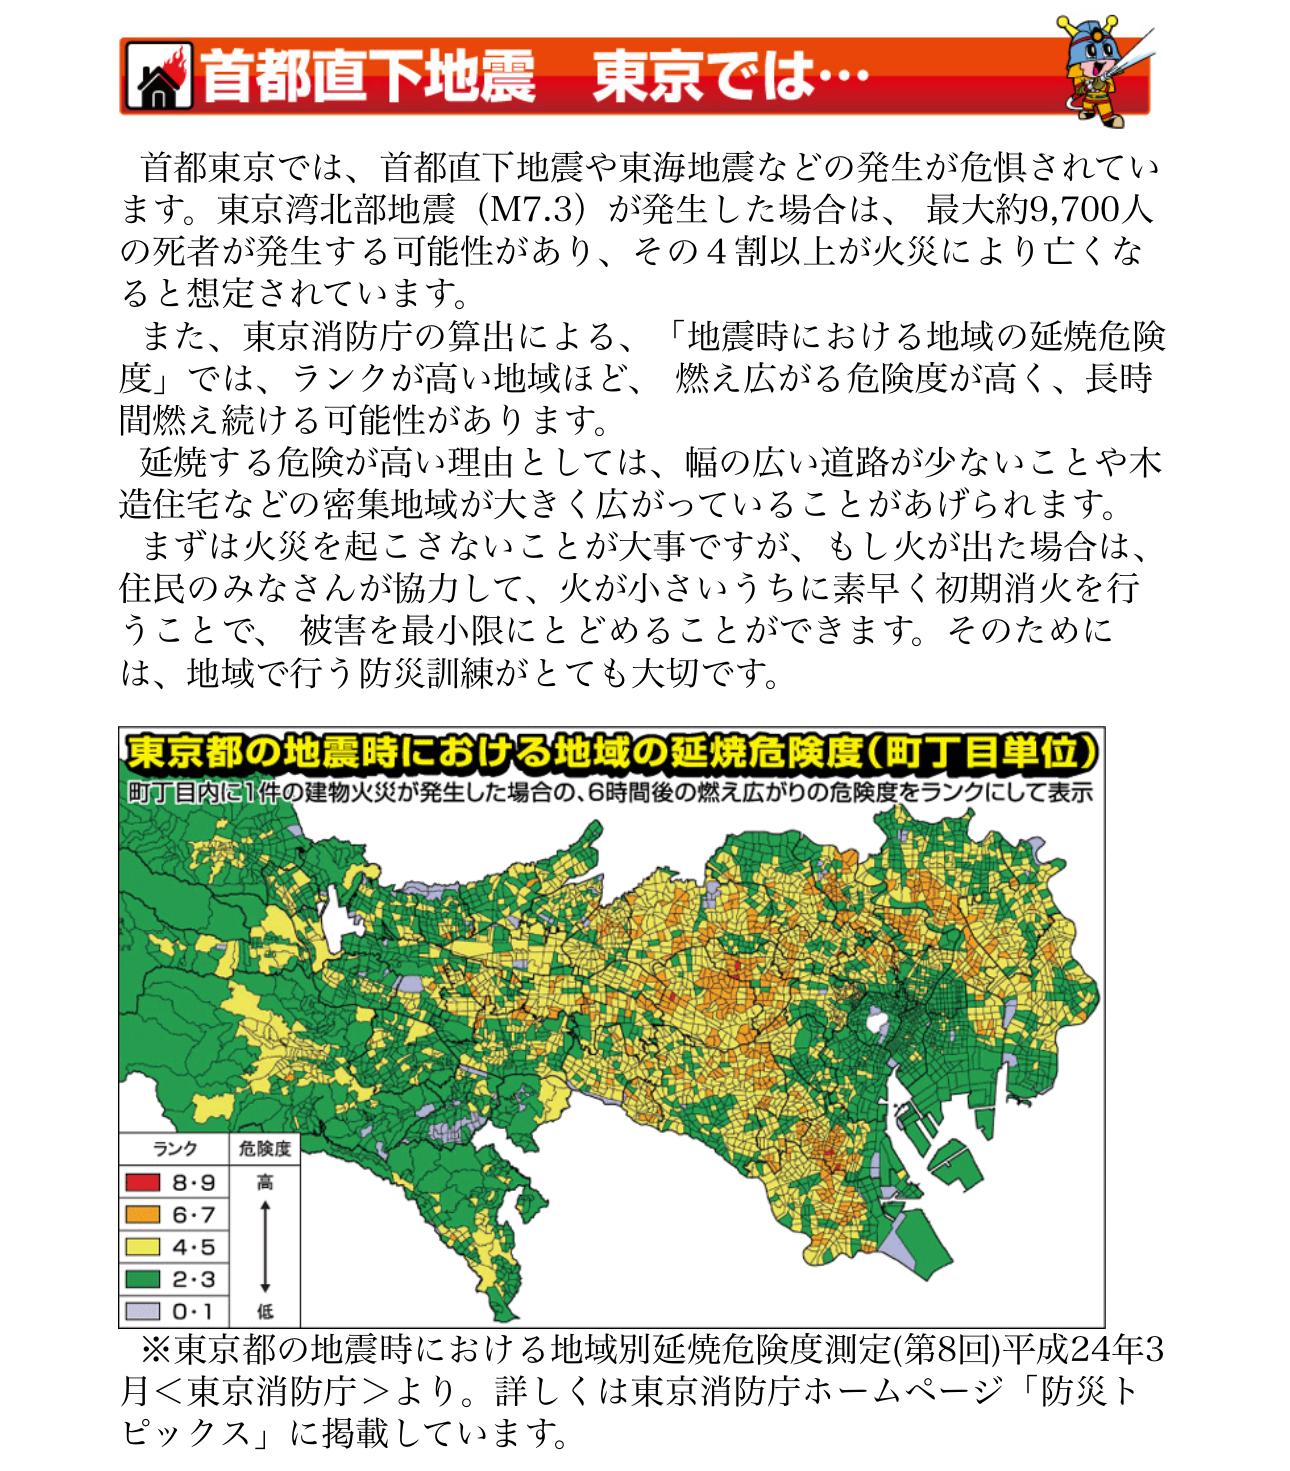 東京直下地震、死者の7割が火災か